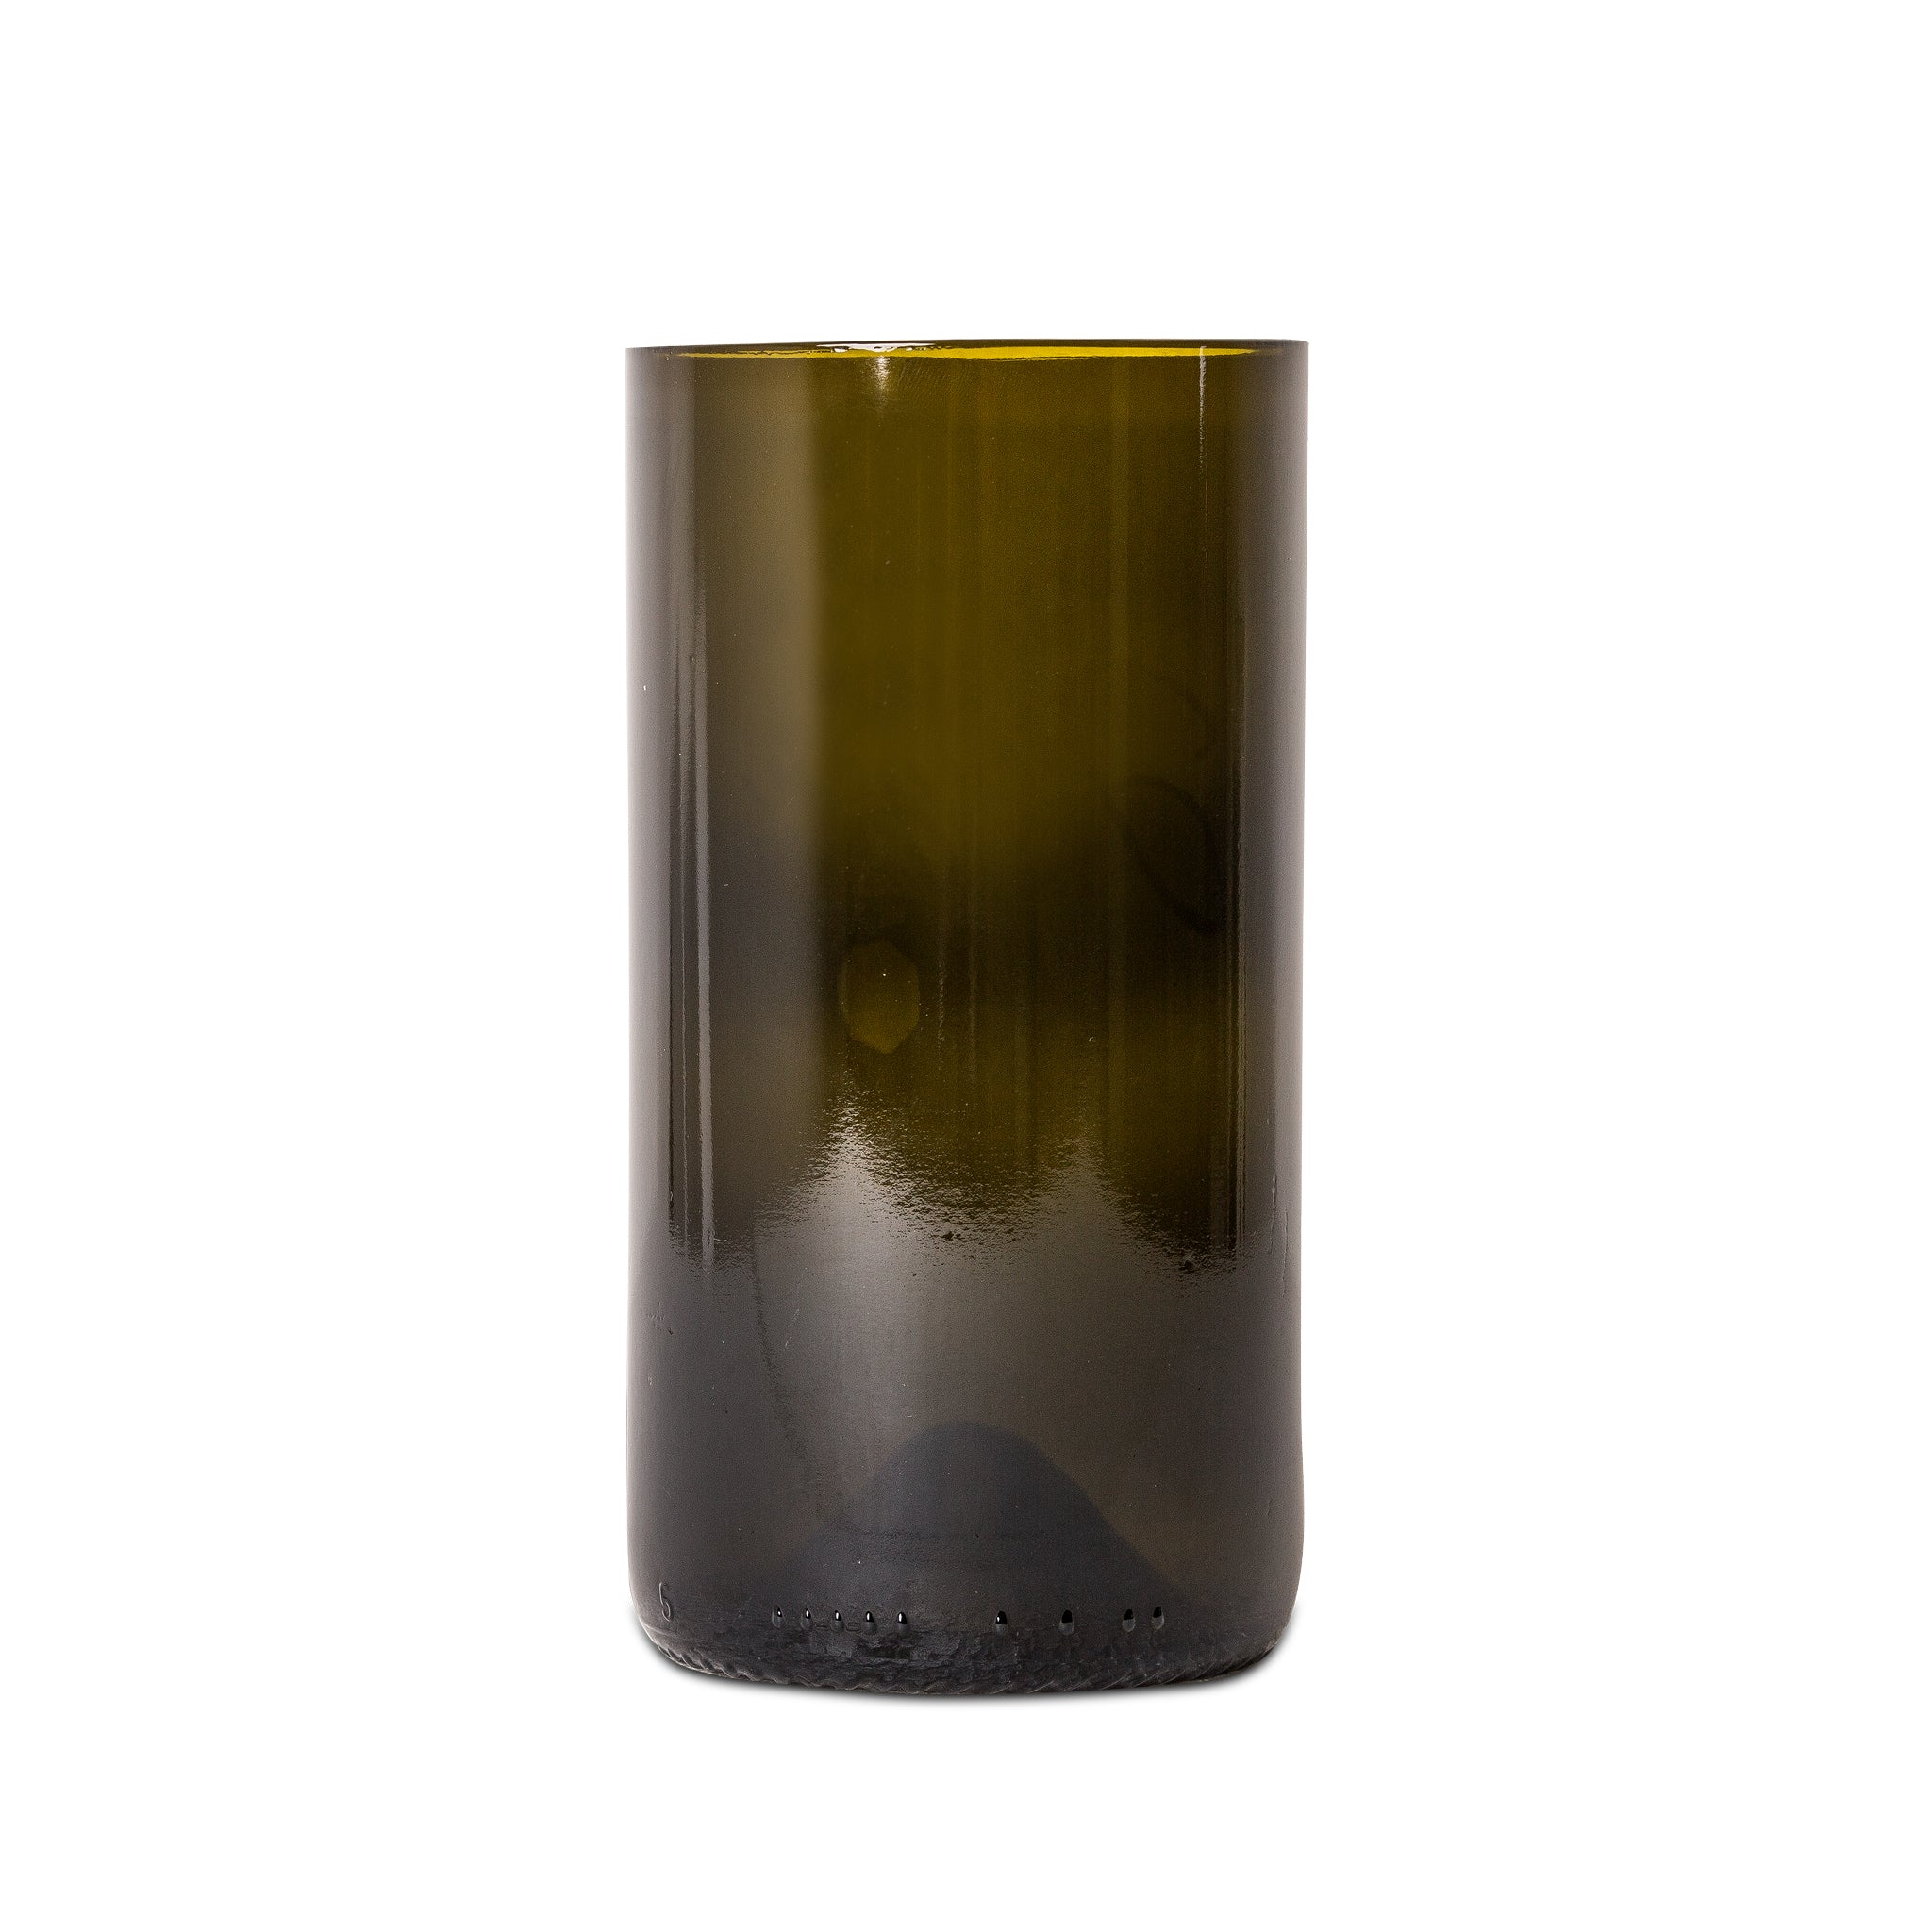 Vase aus Weinflasche groß-personalisiert - Personalisierbare